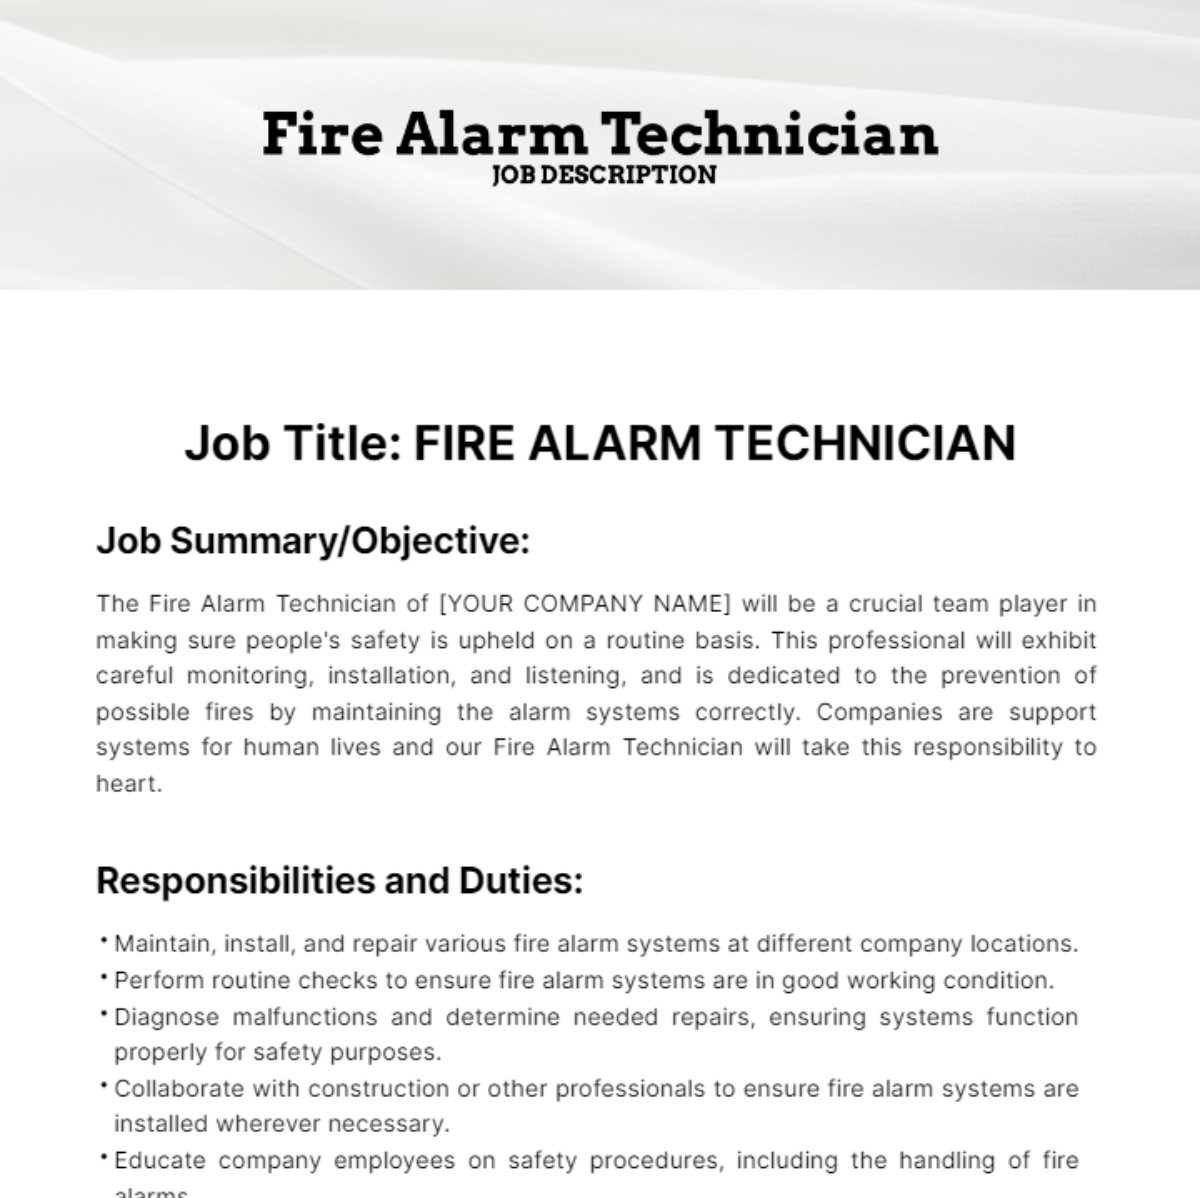 Fire Alarm Technician Job Description Template